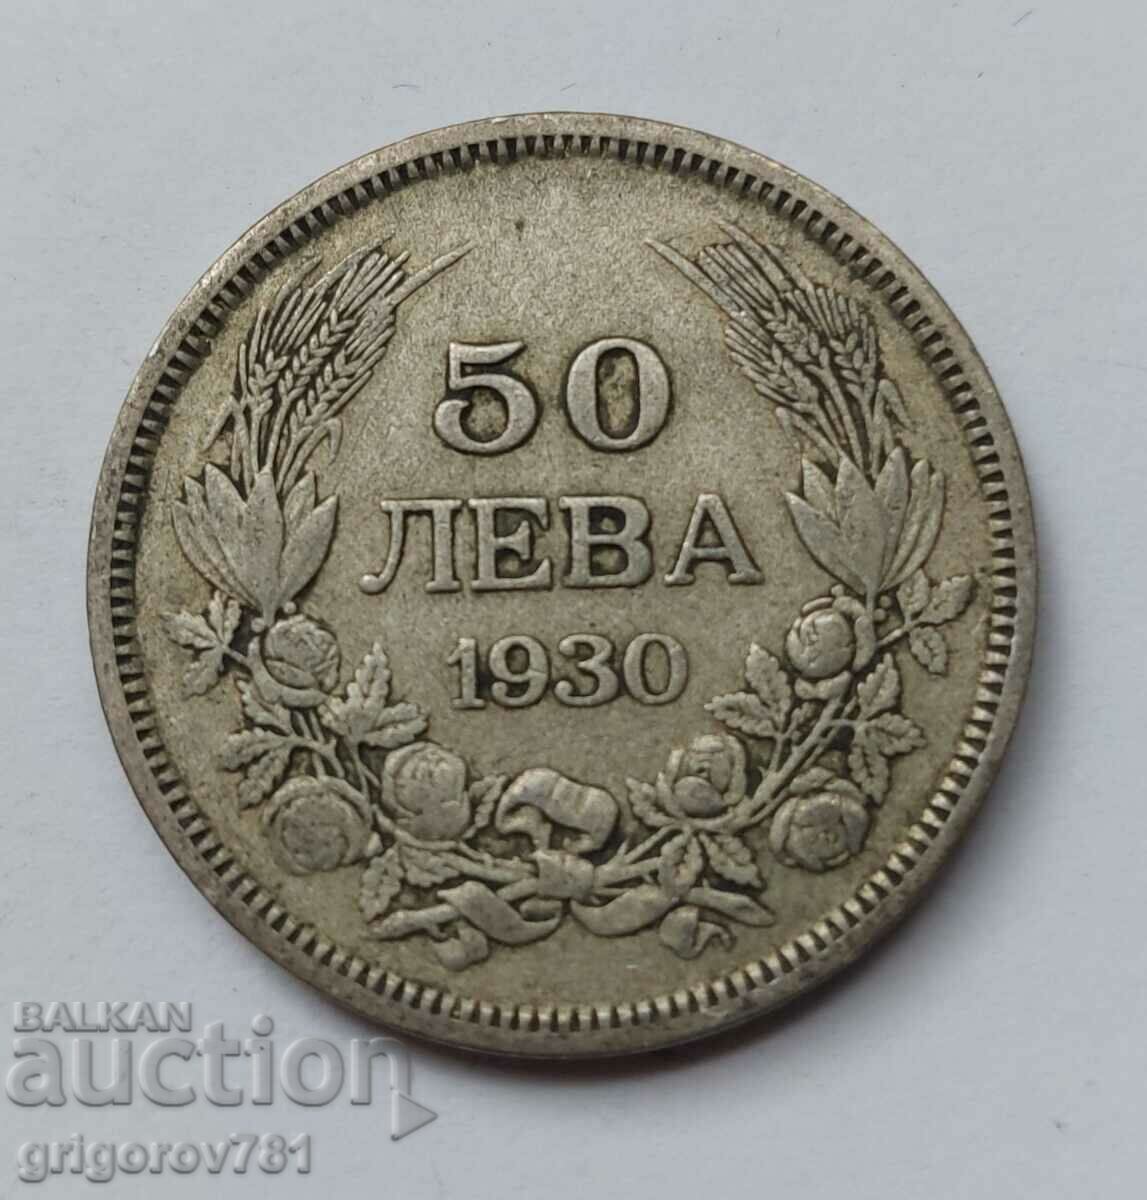 50 leva silver Bulgaria 1930 - silver coin #67